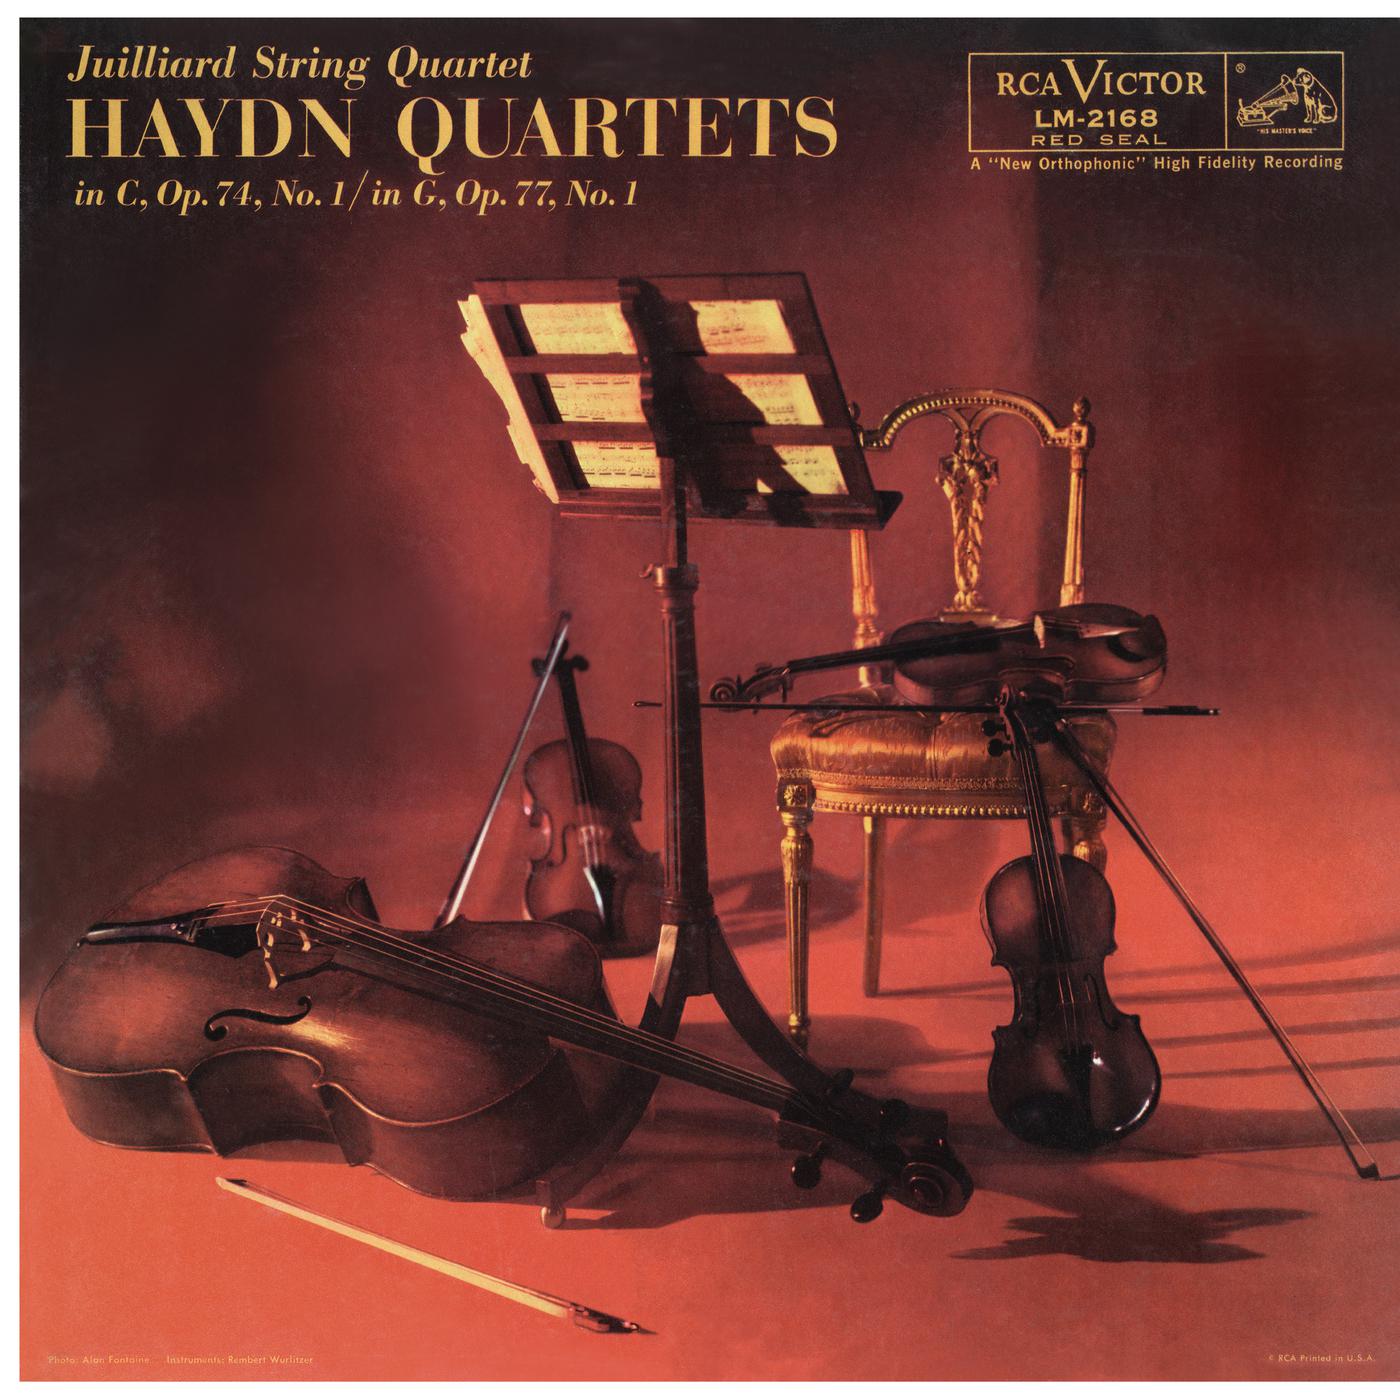 Haydn: String Quartet No. 57 in C Major, Op. 74 No. 1, Hob. III:72 & String Quartet in G Major, Op. 77 No. 1, Hob. III:81 "Lobkowitz" (Remastered)